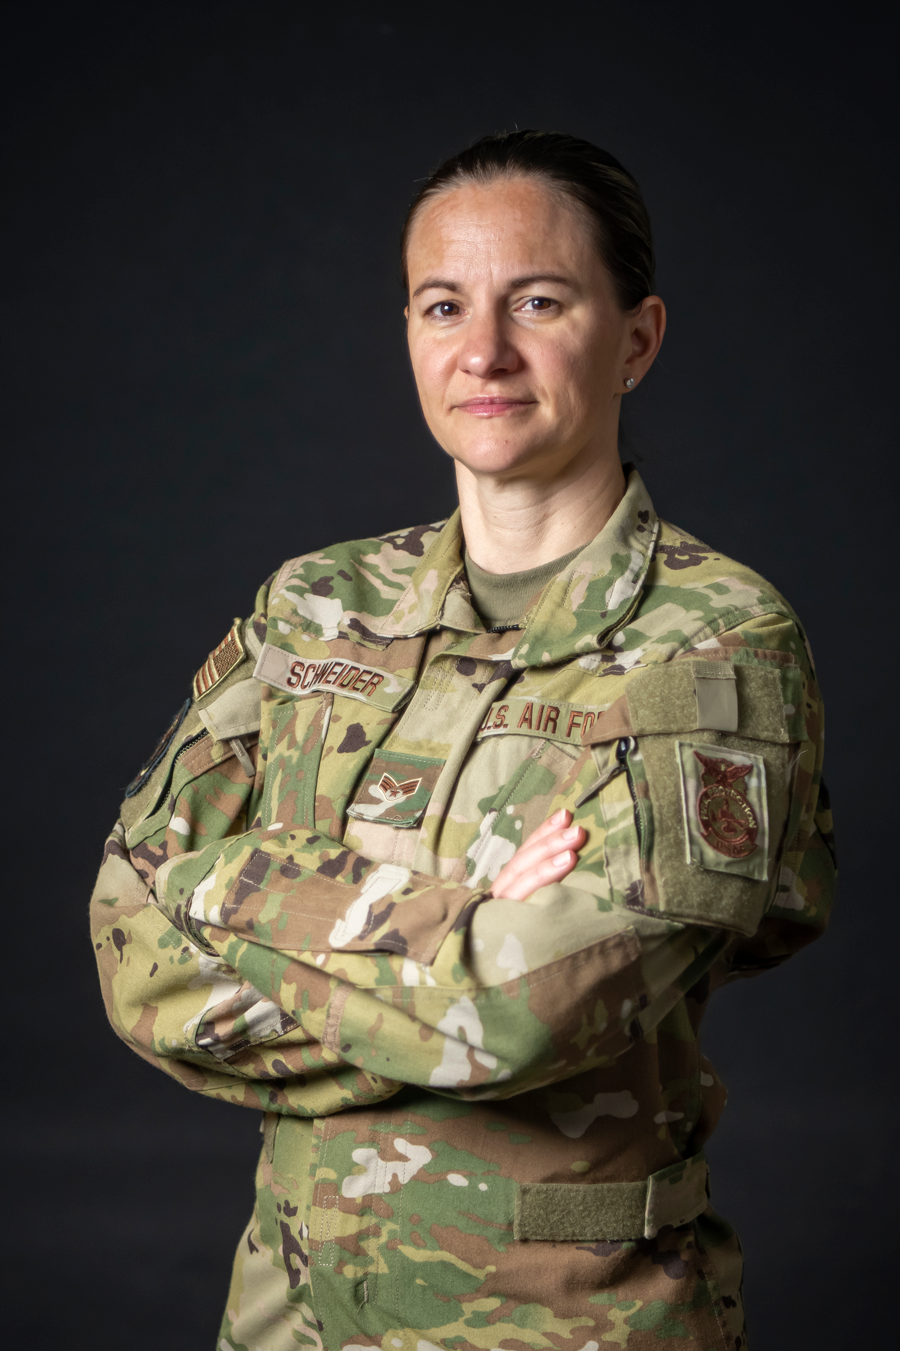 Portrait of Senior Airman Kristina Schneider in uniform.
